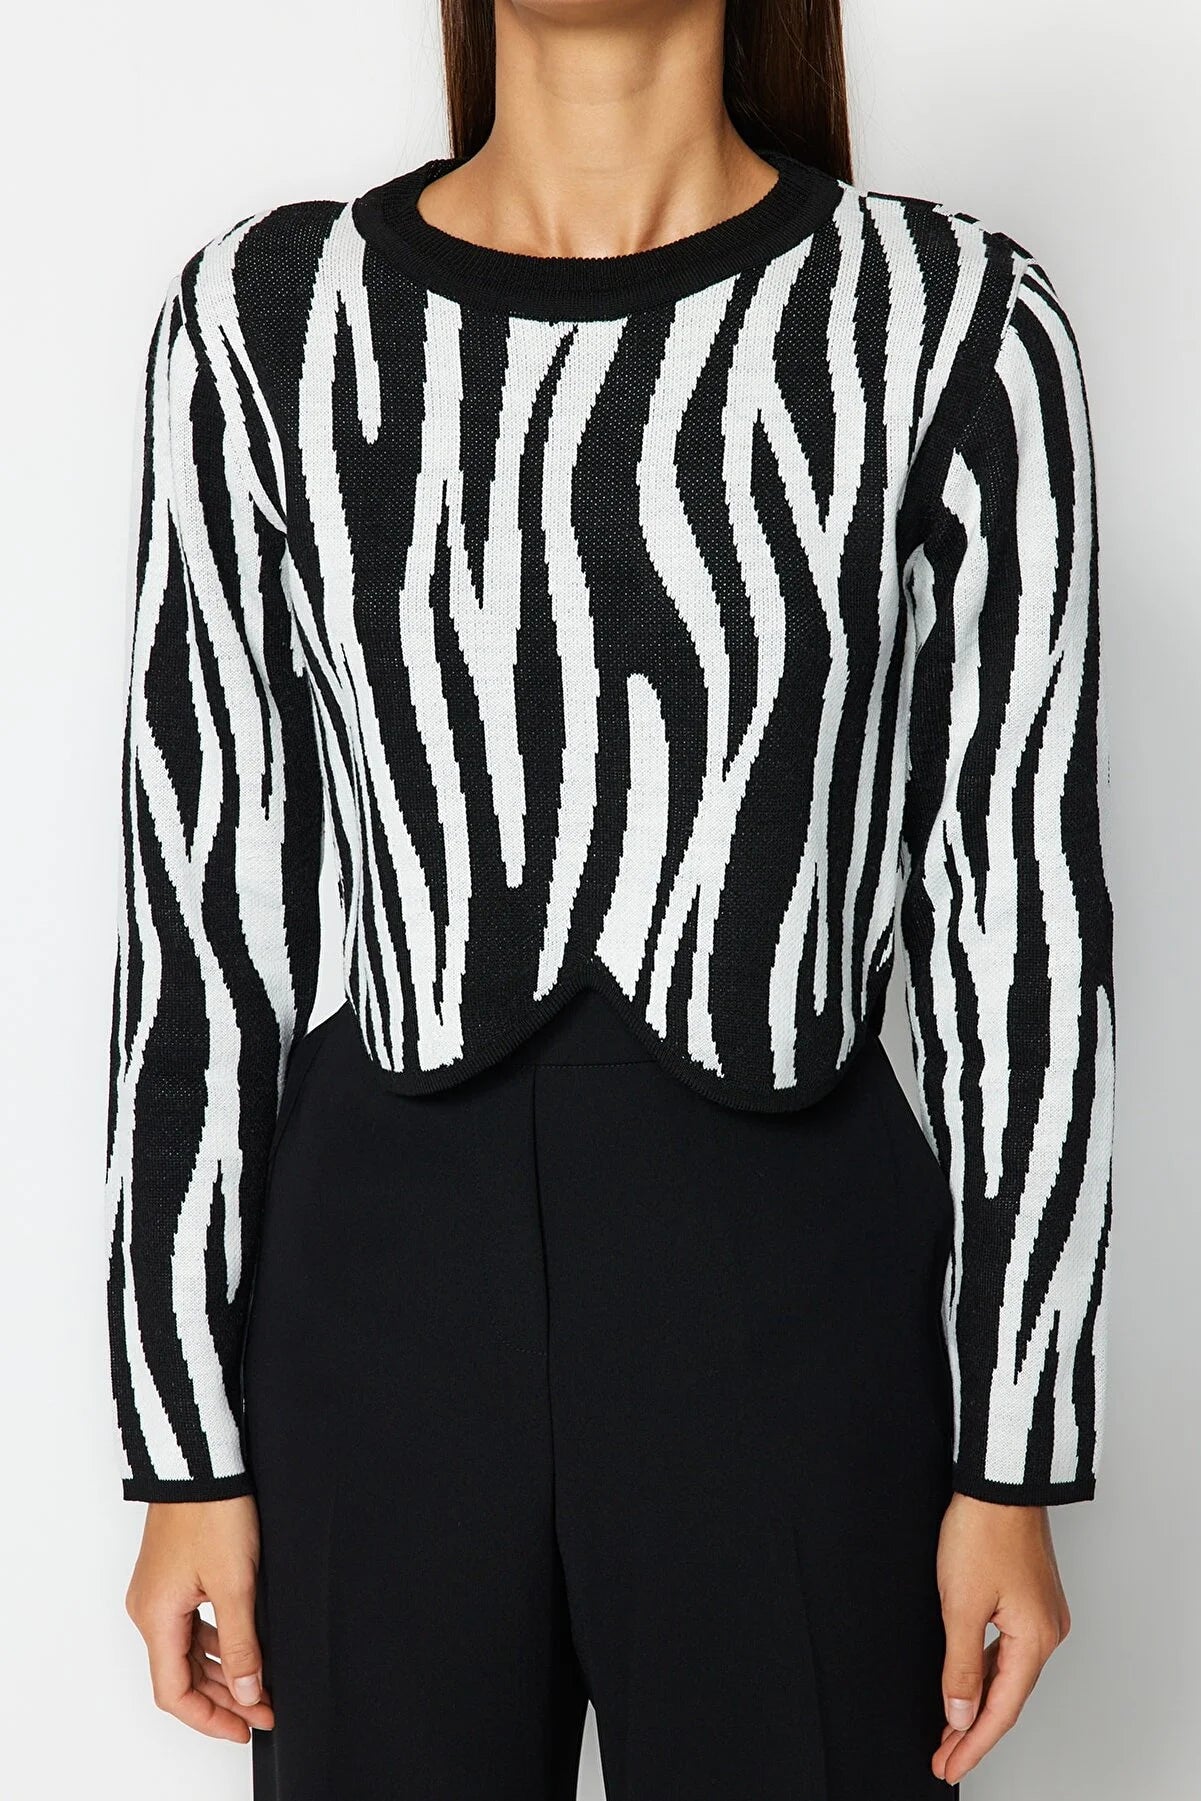 Bombo |cropped sweater-trui met zebra print zwart | EXTRA 30% KORTING